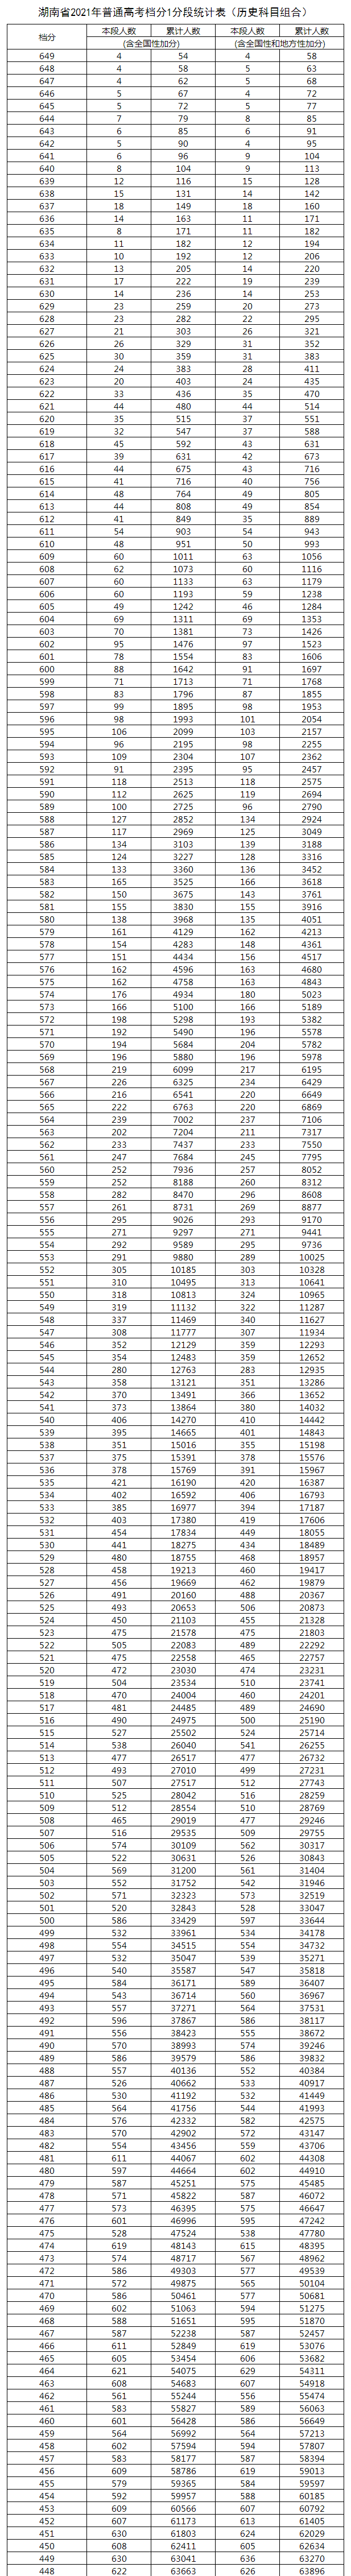 2021湖南高考总成绩一分一段表